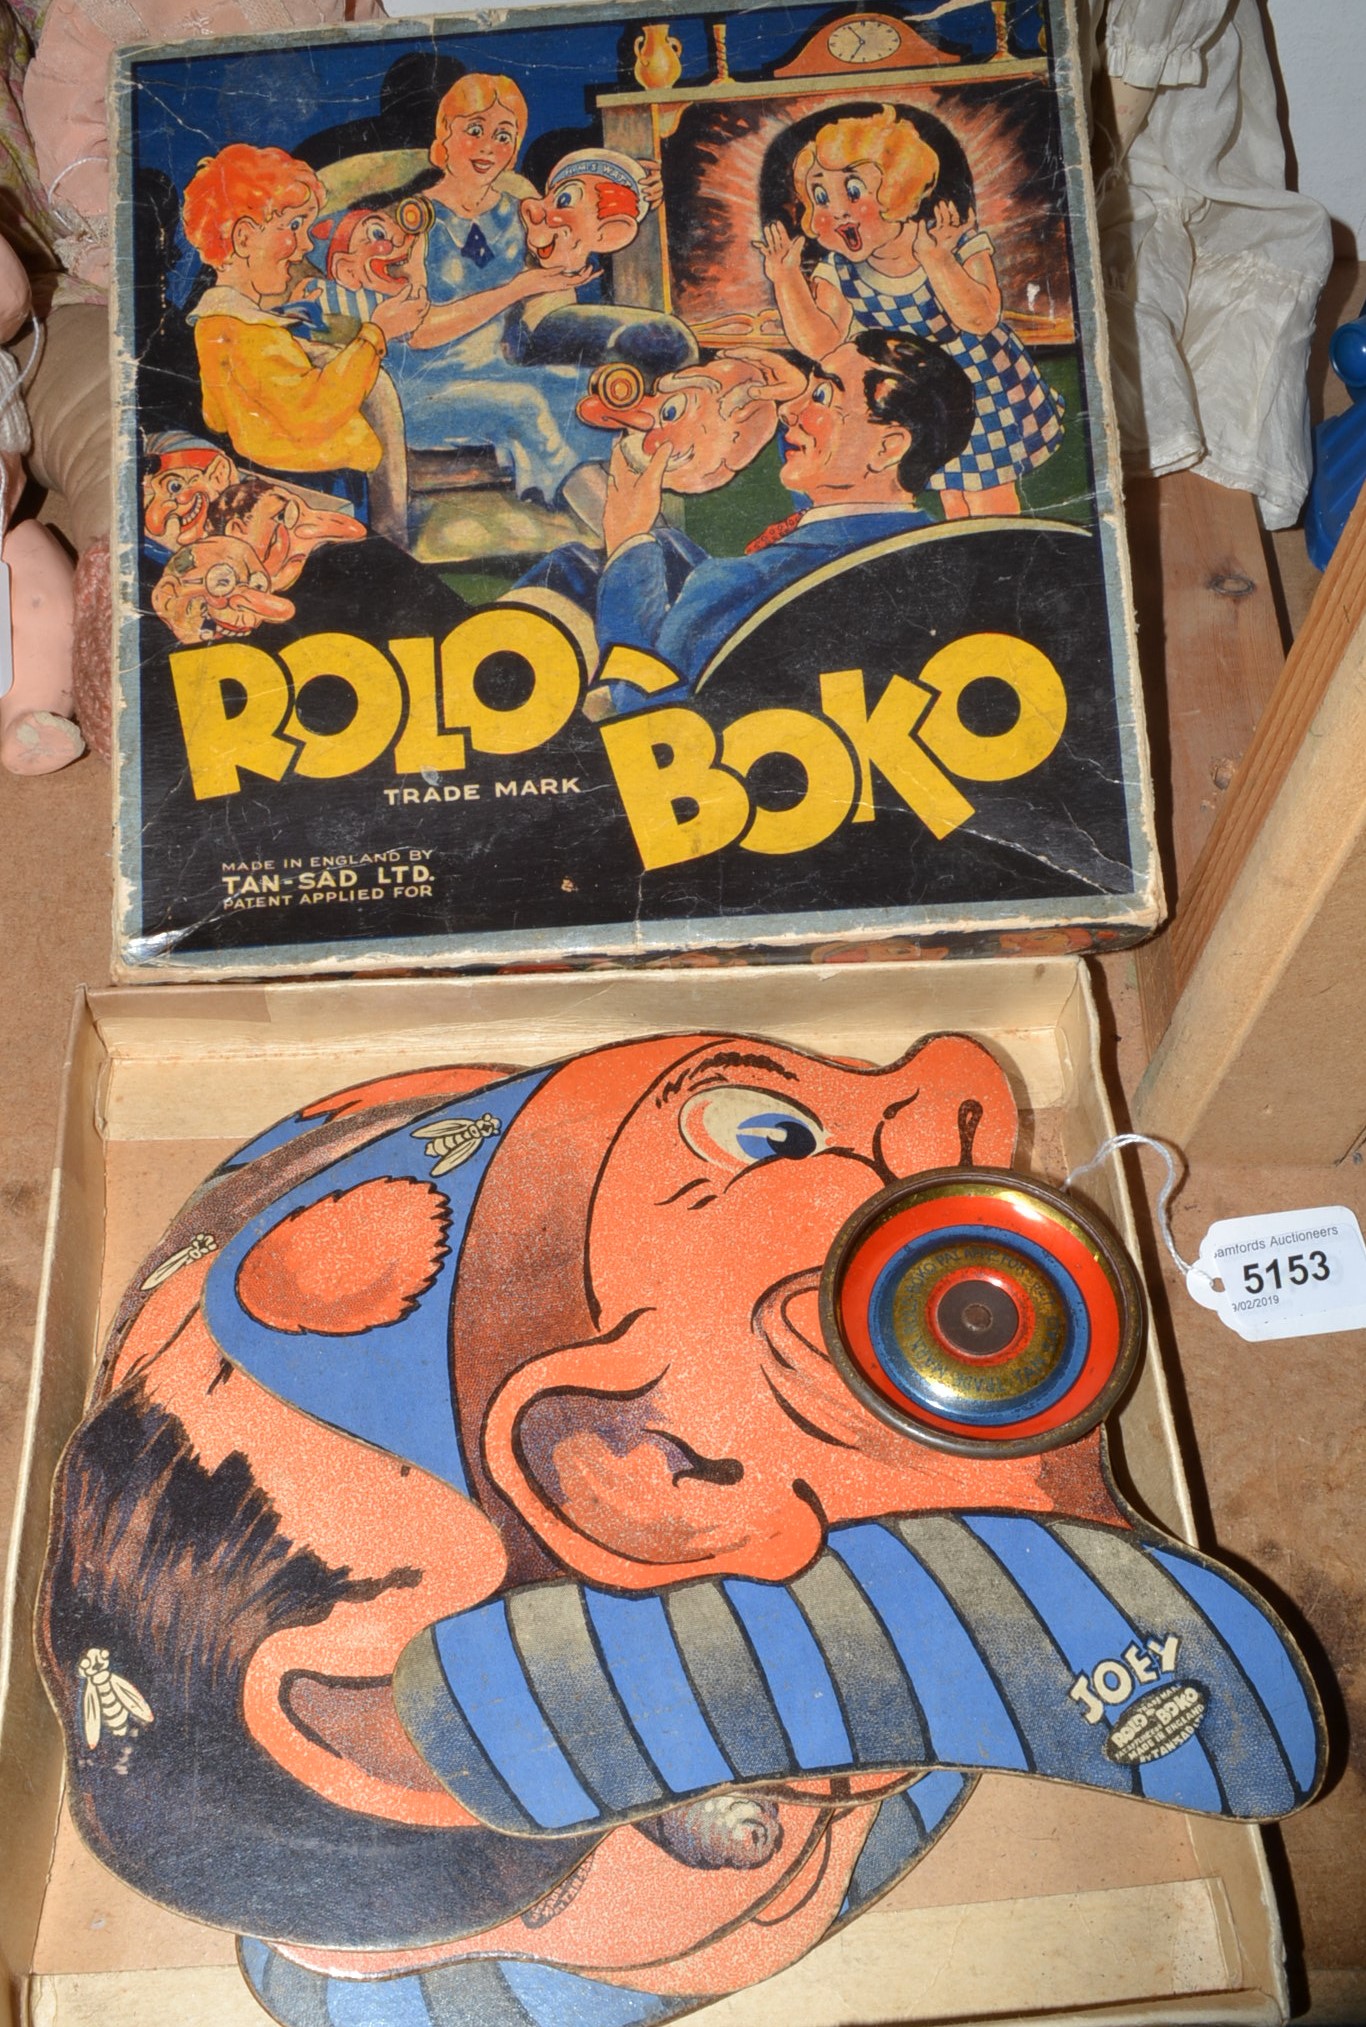 Rolo Boko game by Tan-Sad Ltd.